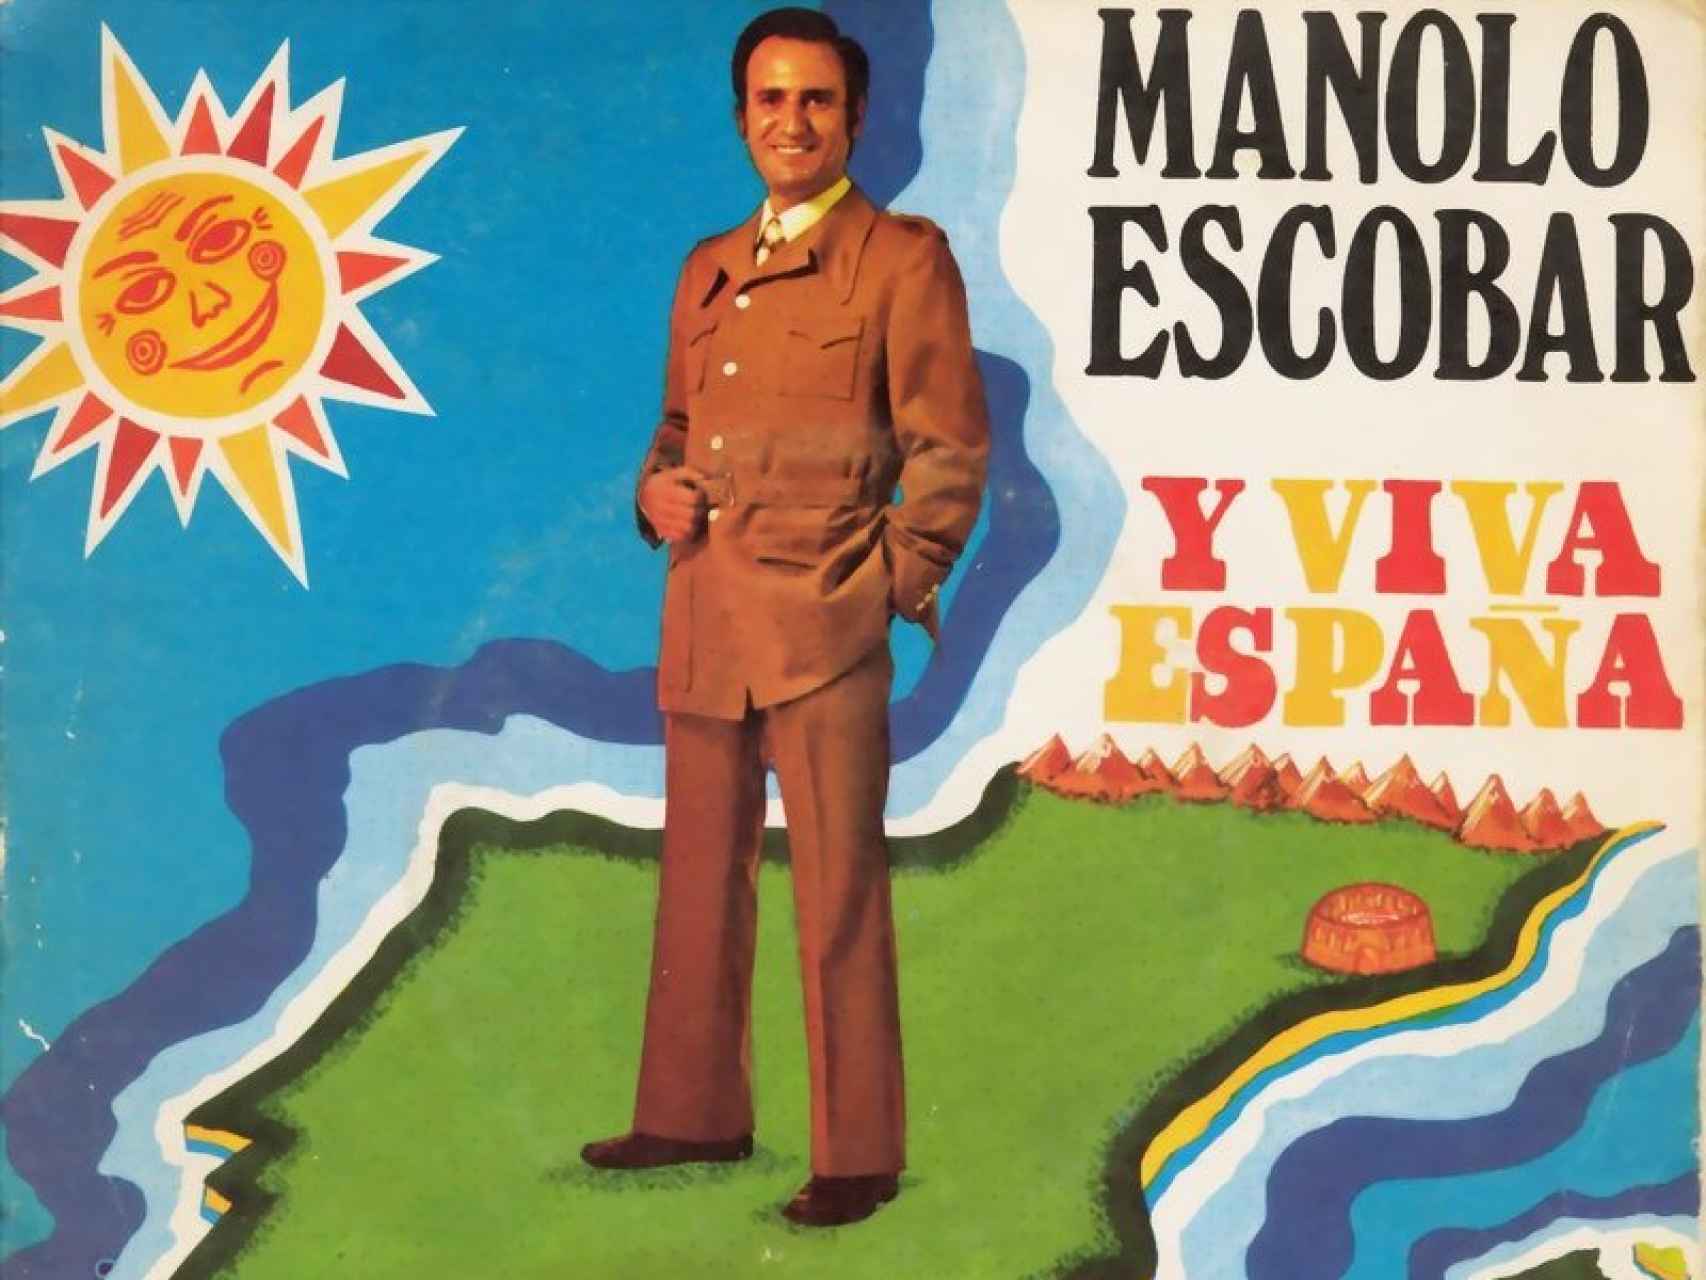 Manolo Escobar sobre la Península Ibérica.